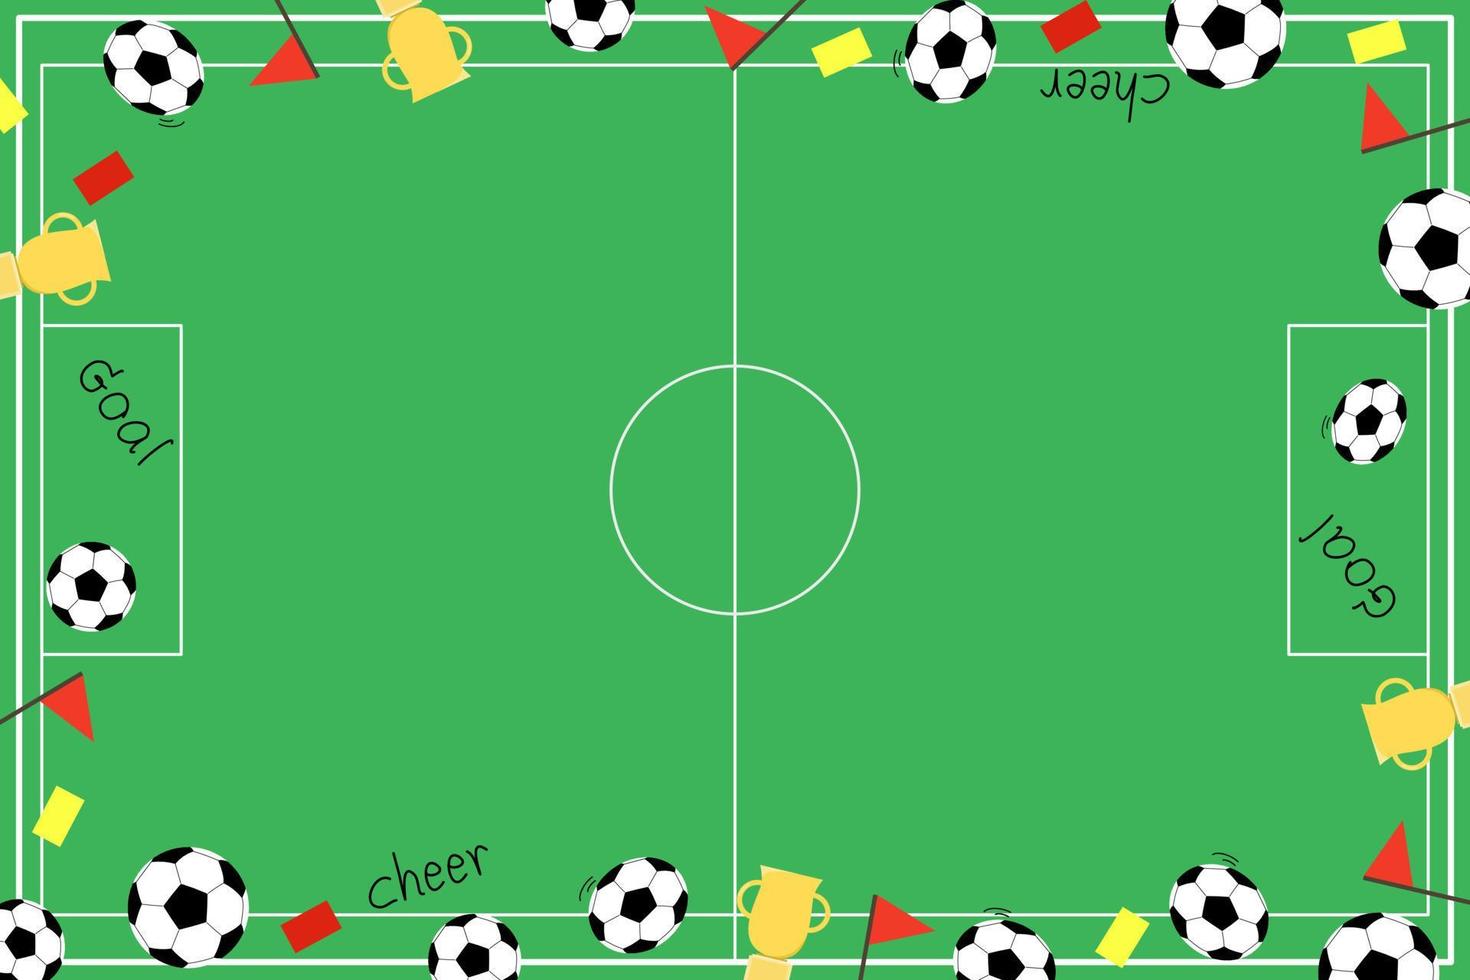 vektor - ovanifrån av stadion för fotboll eller fotboll. boll, trofé, gult och rött kort, mål. sport, rekreation koncept.